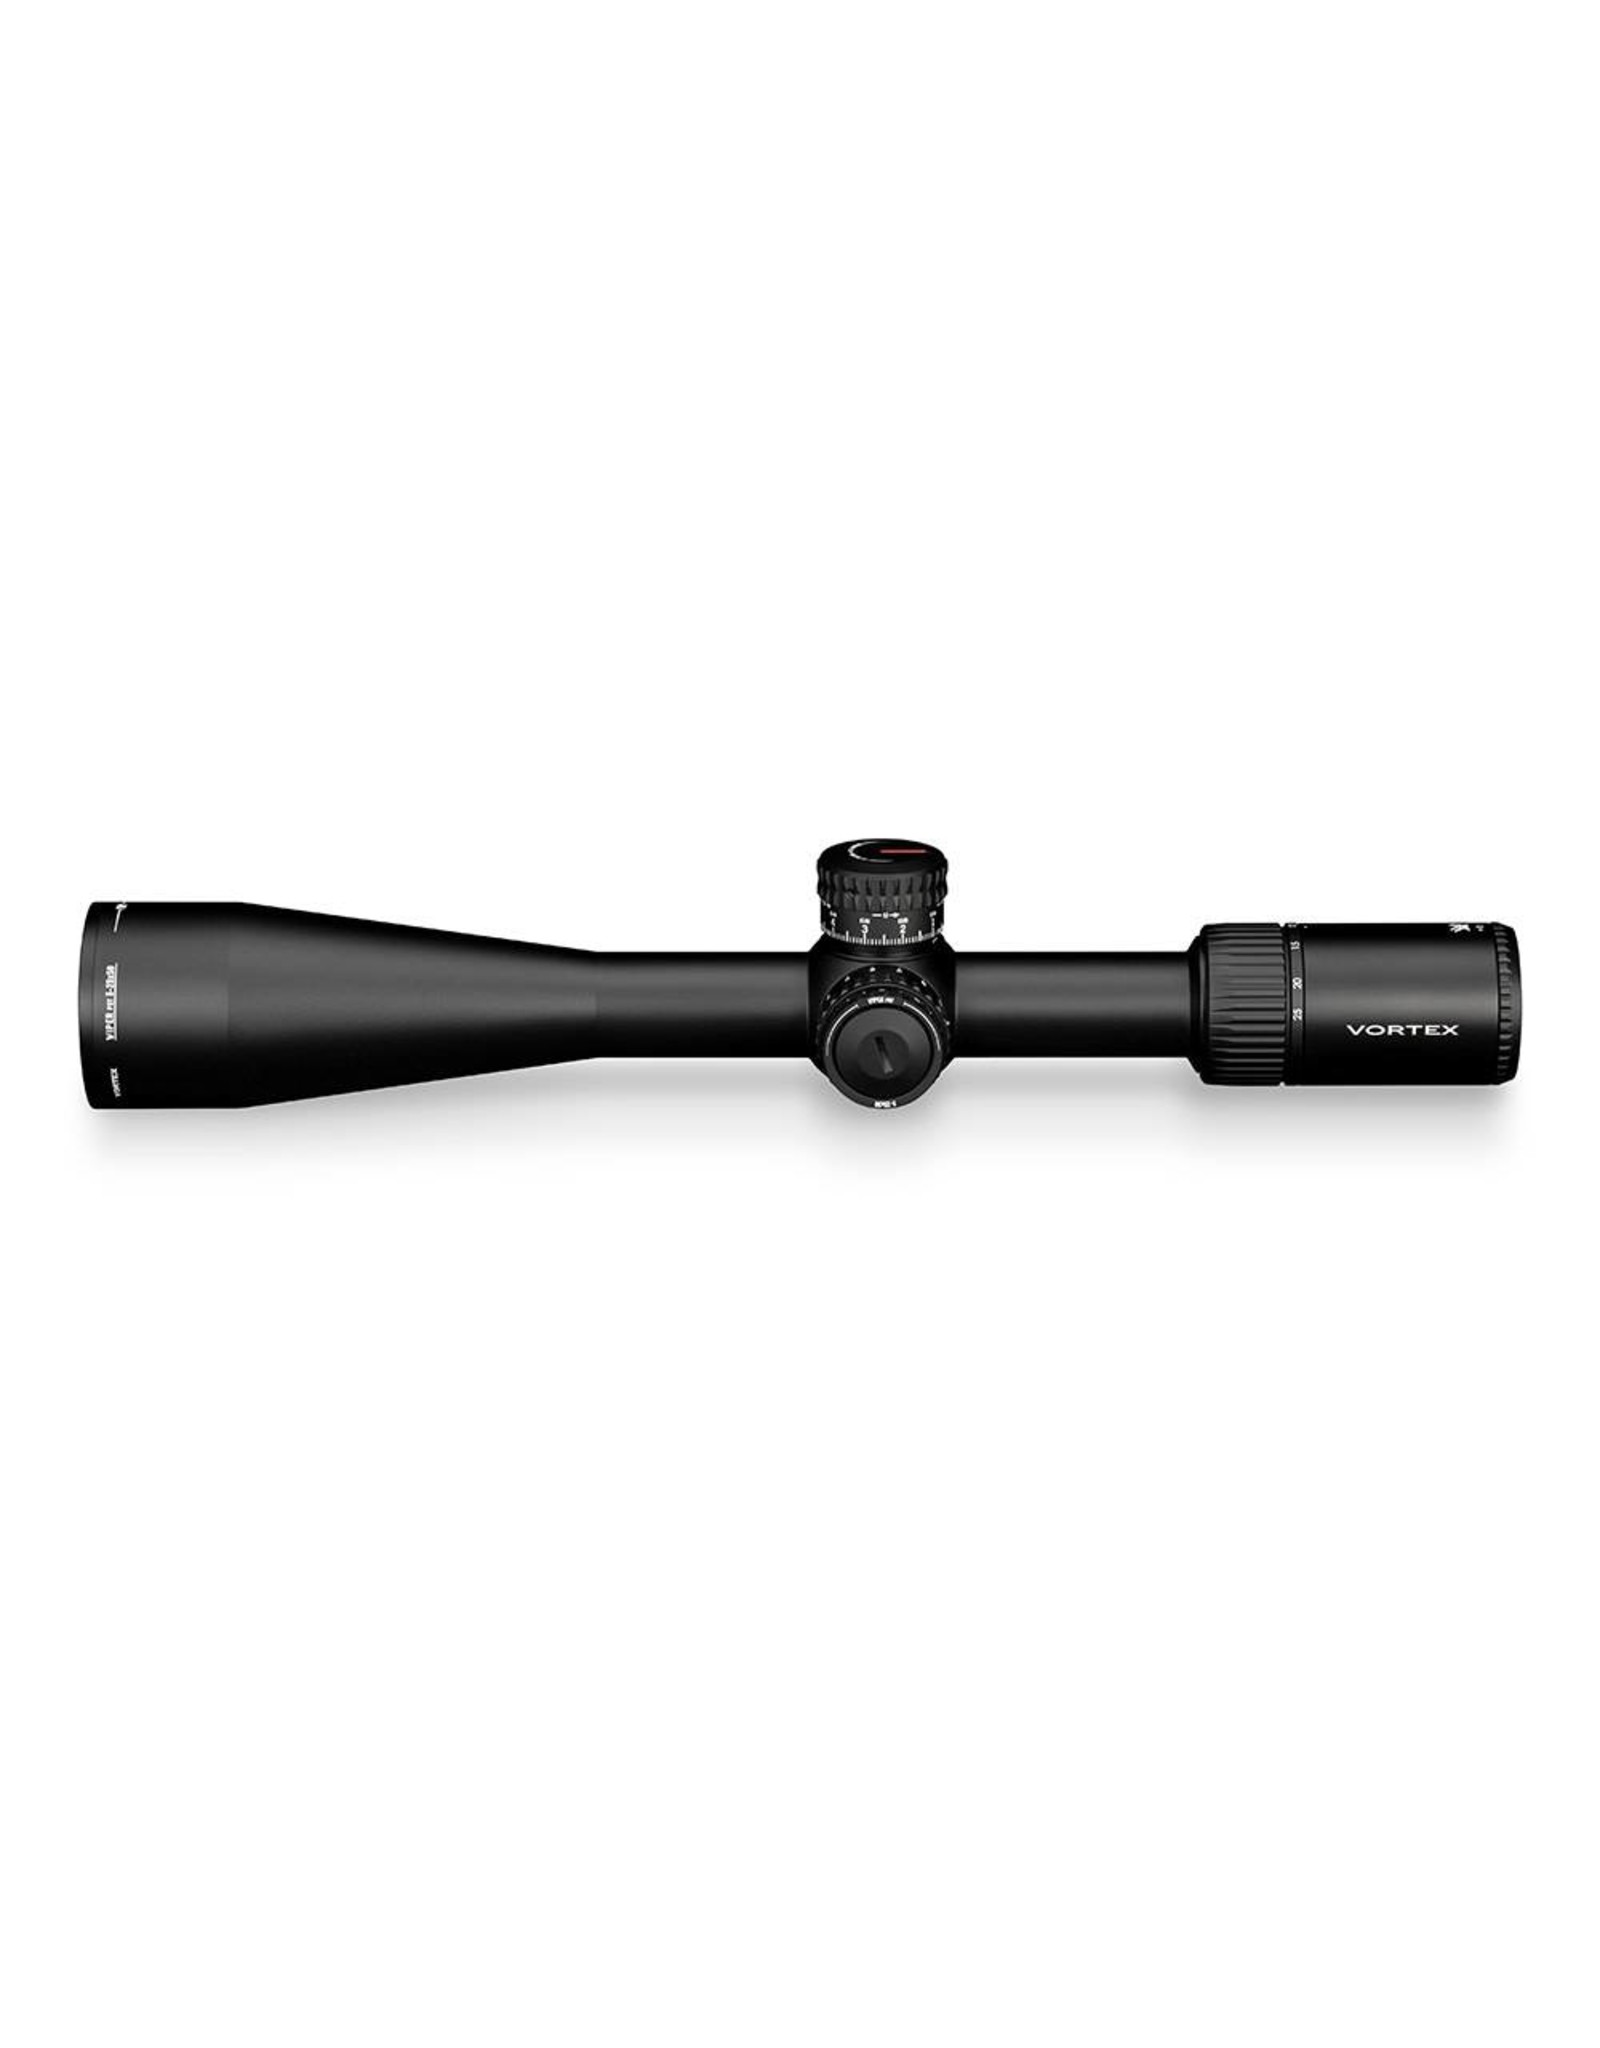 Vortex Vortex Viper PST 5-25x50 FFP Riflescope with EBR-2C MRAD